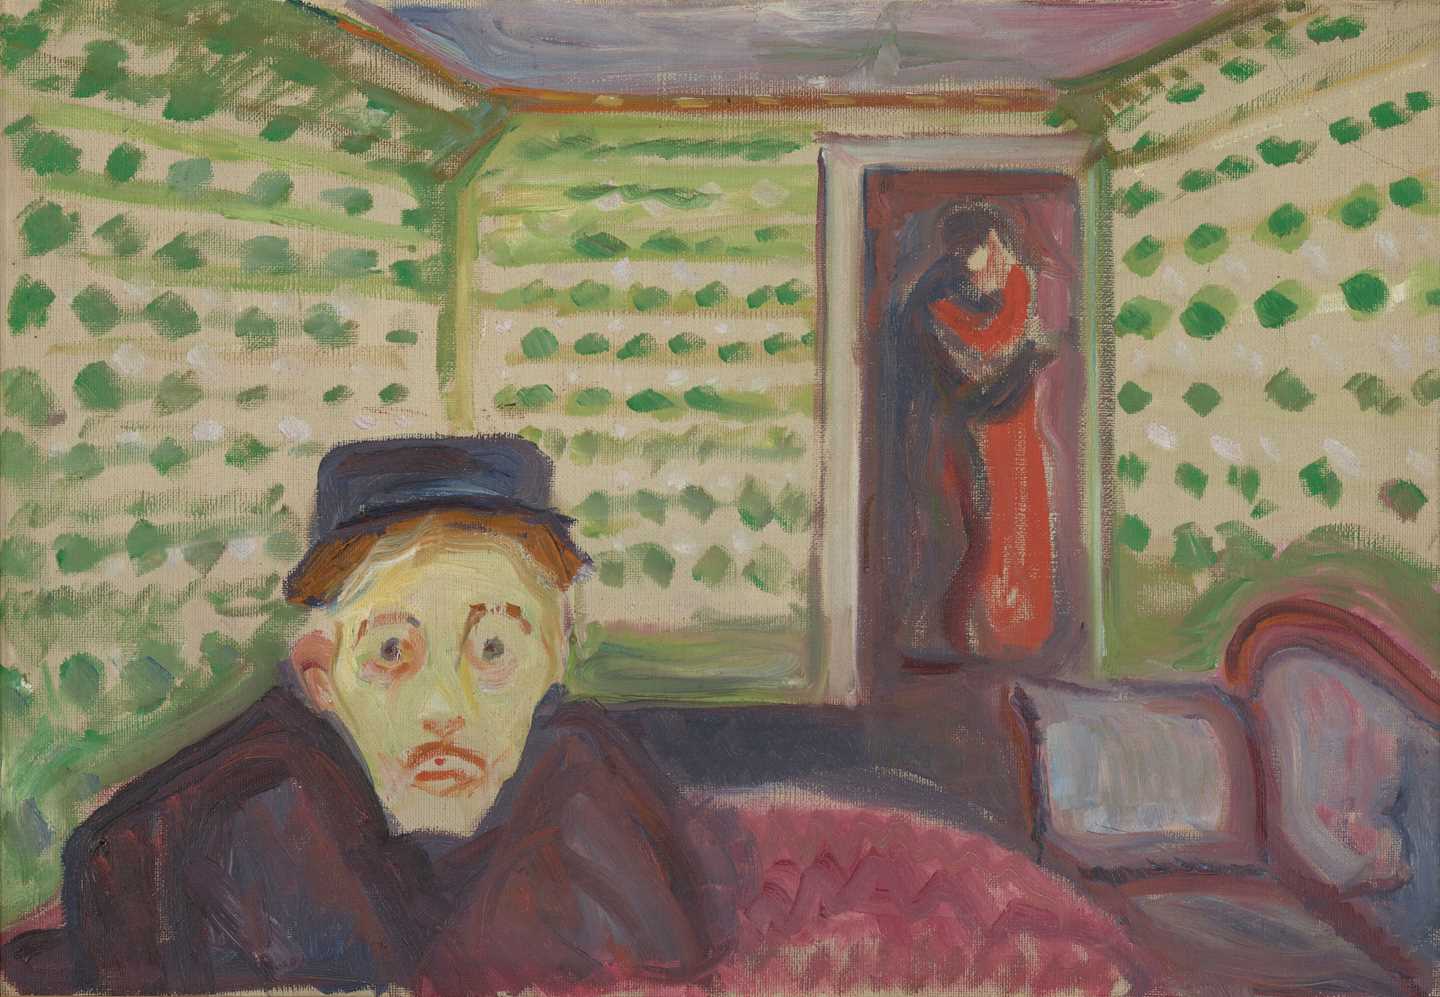 Edvard Munch: Jealousy. Oil on canvas, 1907?. Photo © Munchmuseet